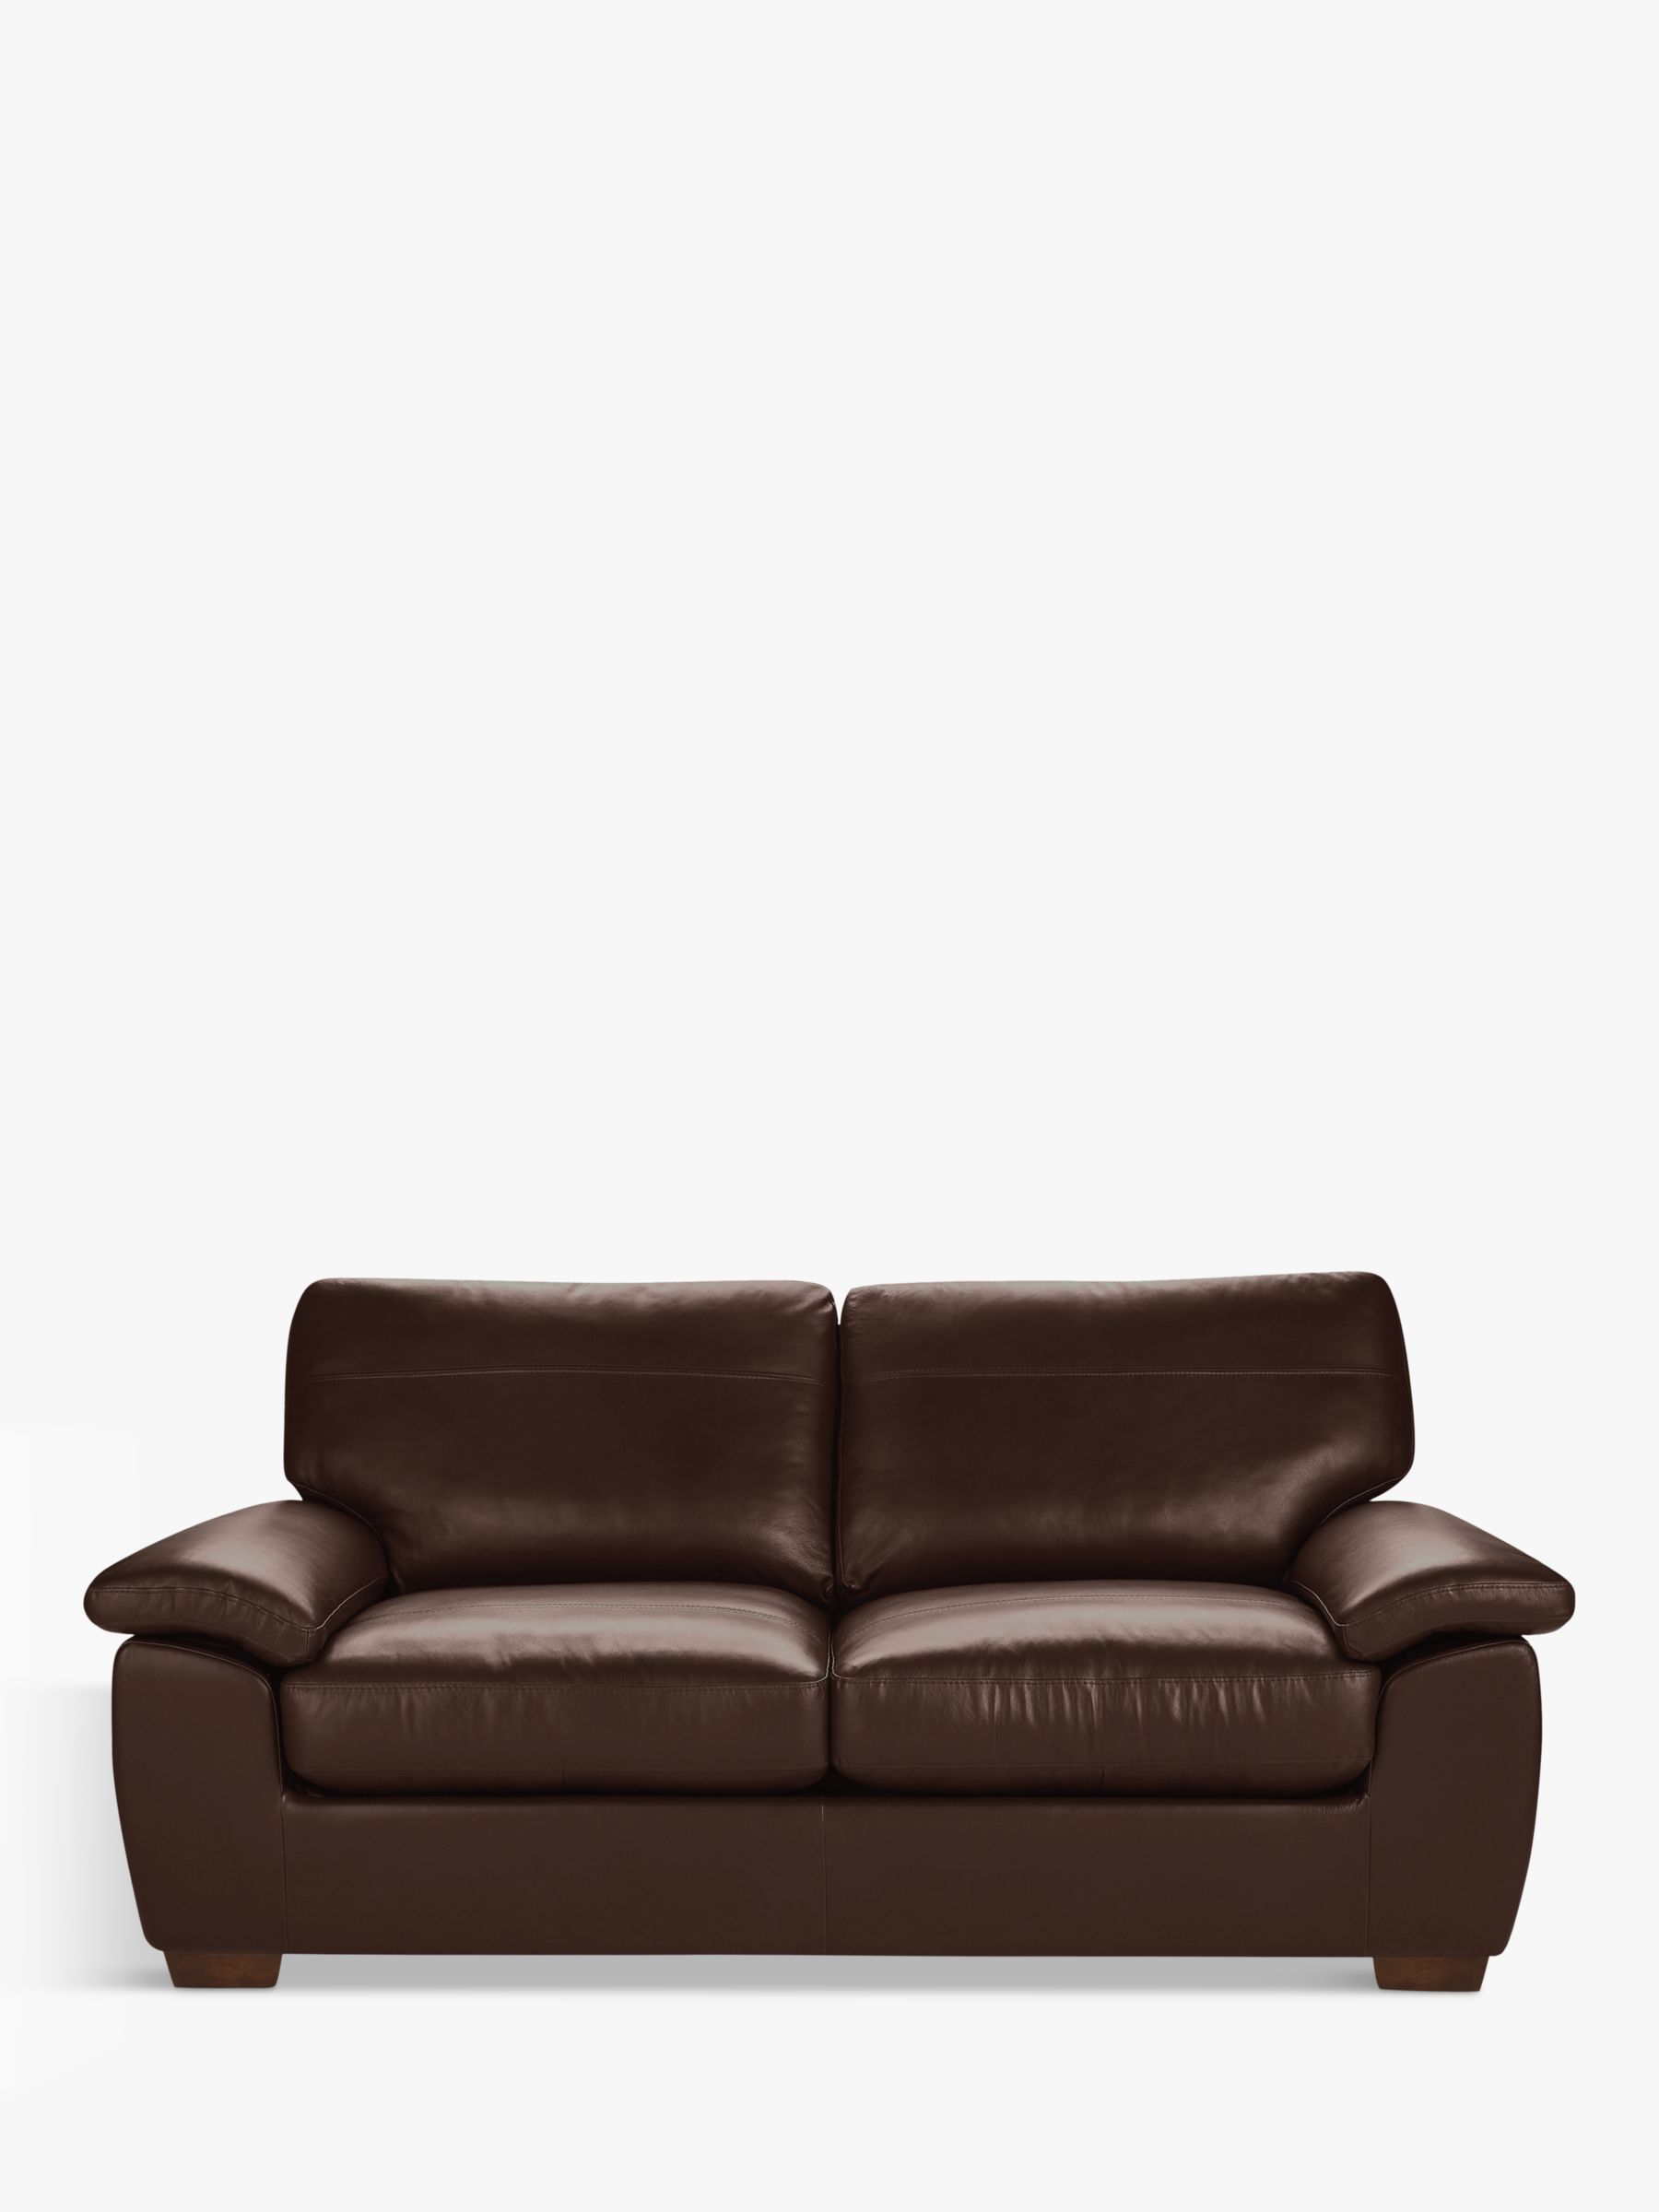 Camden Range, John Lewis Camden Large 3 Seater Leather Sofa, Dark Leg, Nature Brown